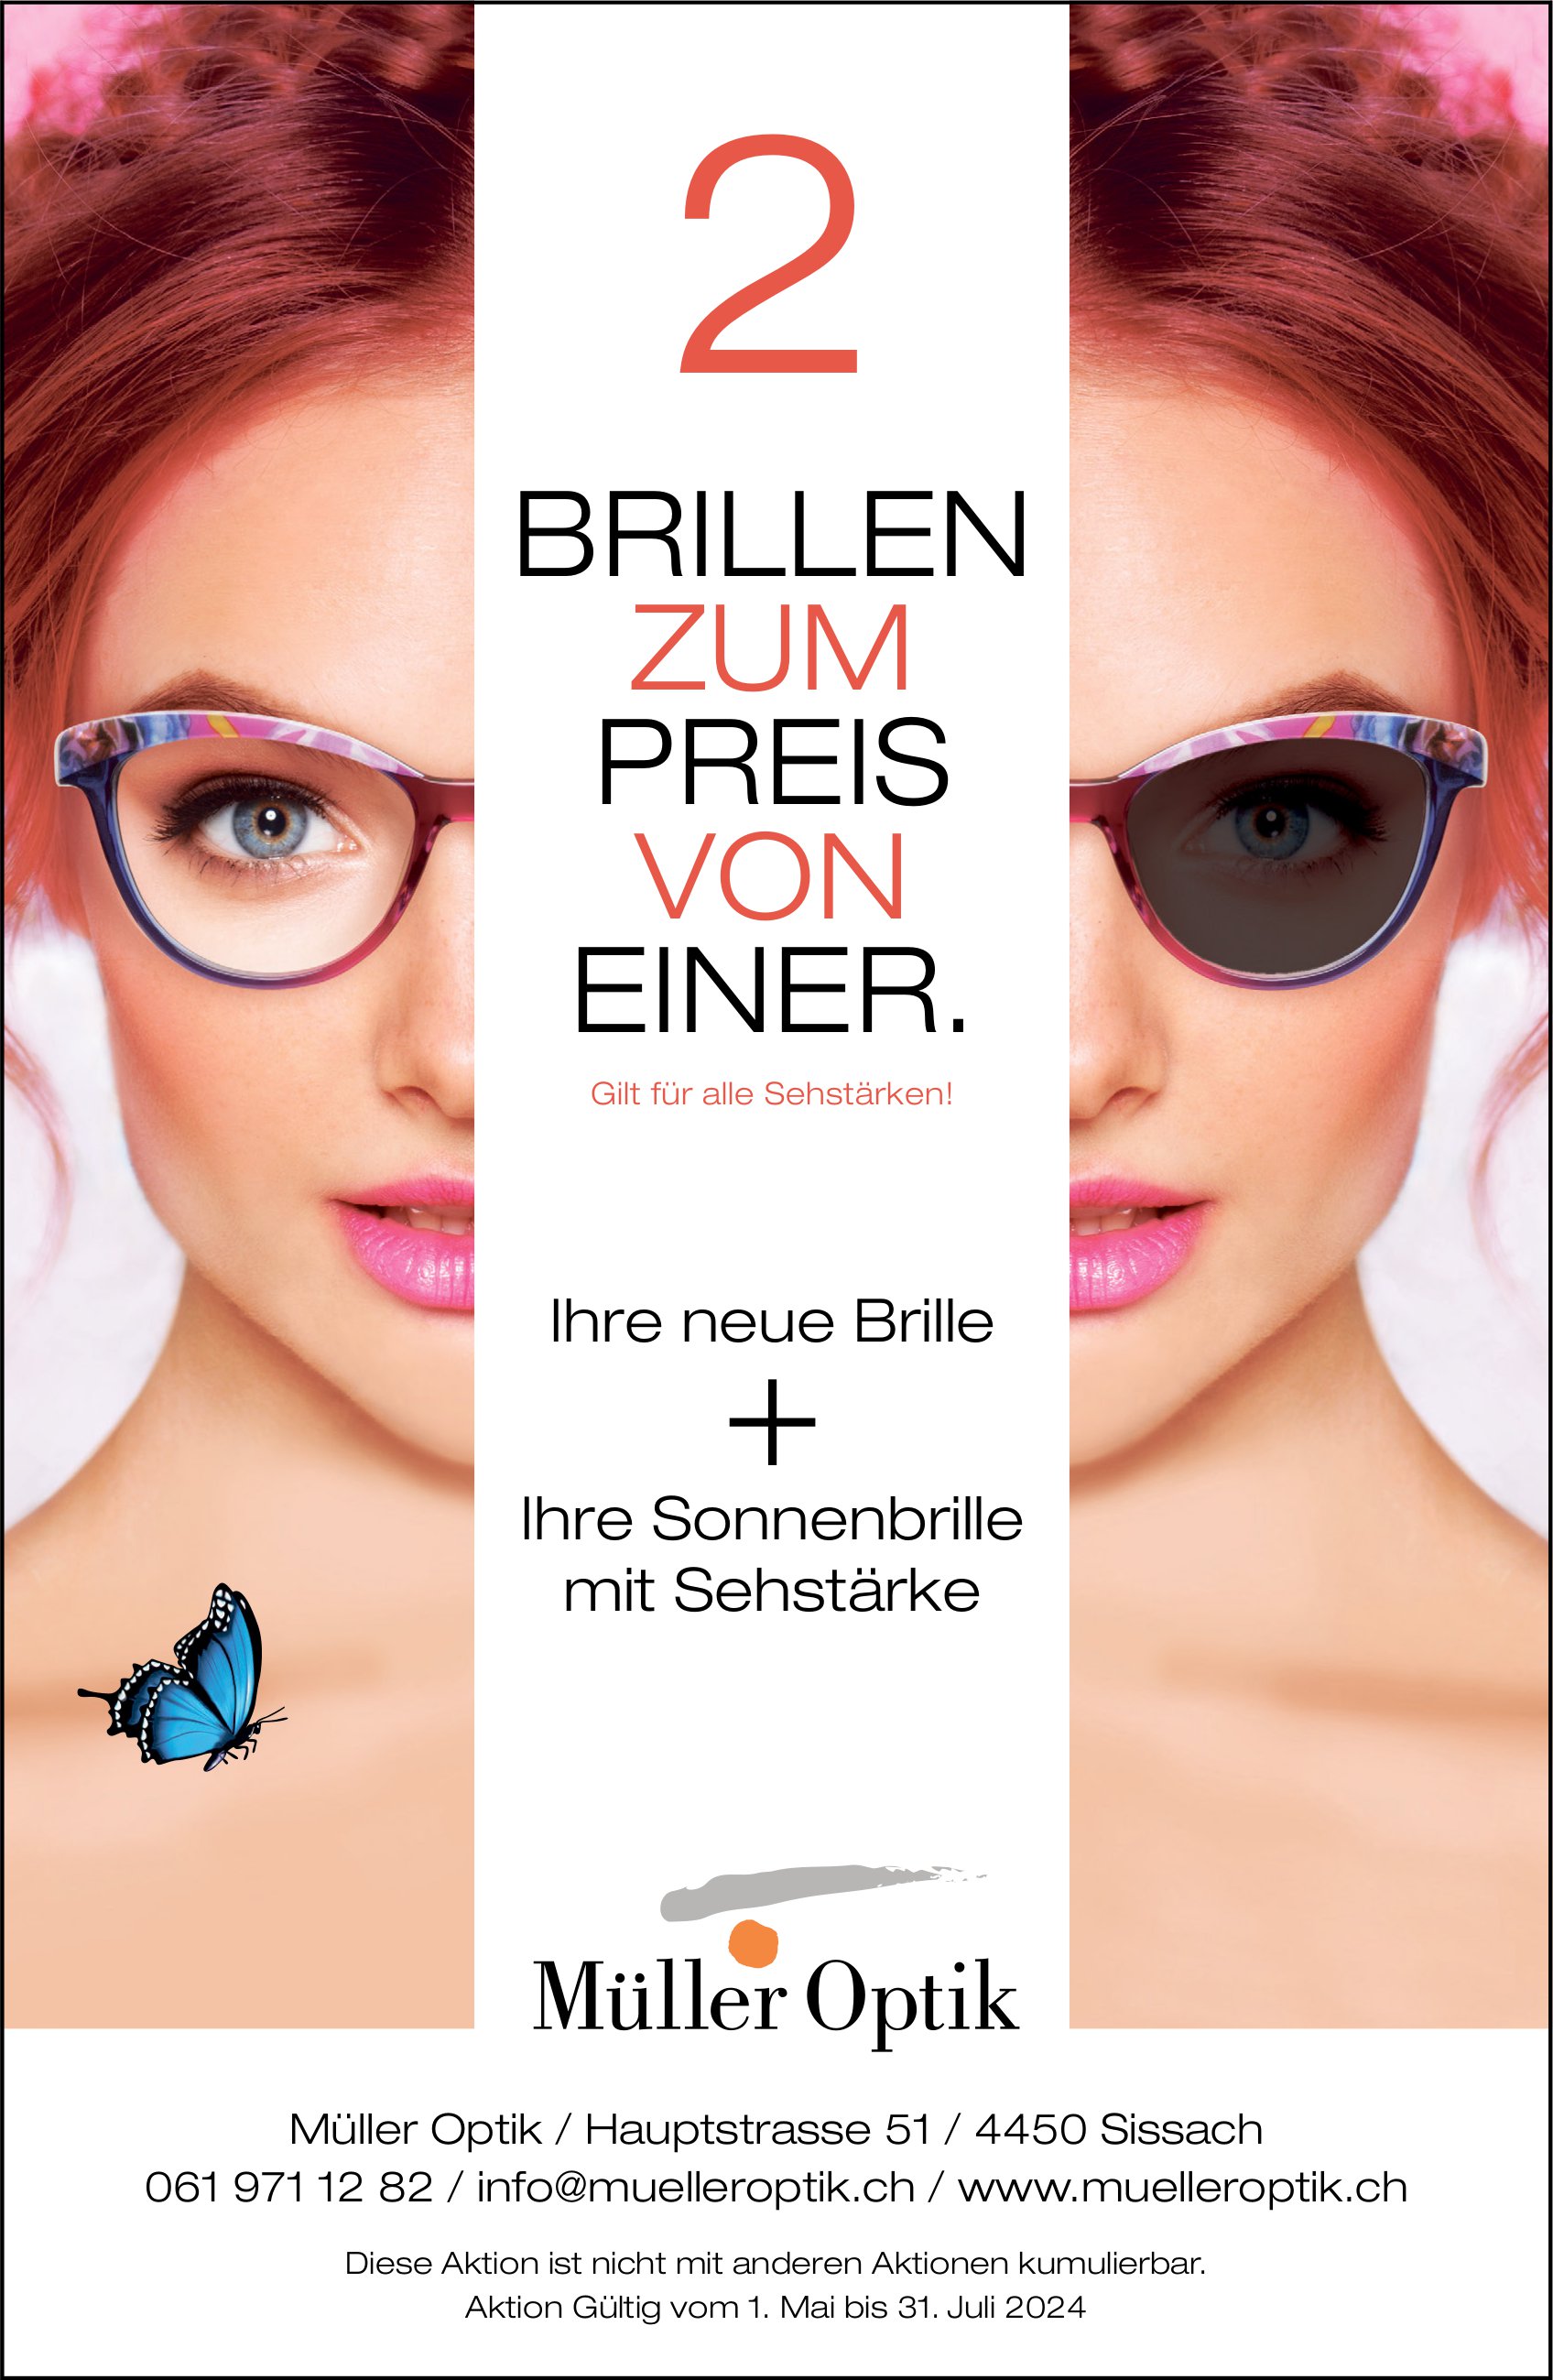 Müller Optik, Sissach - 2 Brillen zum Preis von einer.